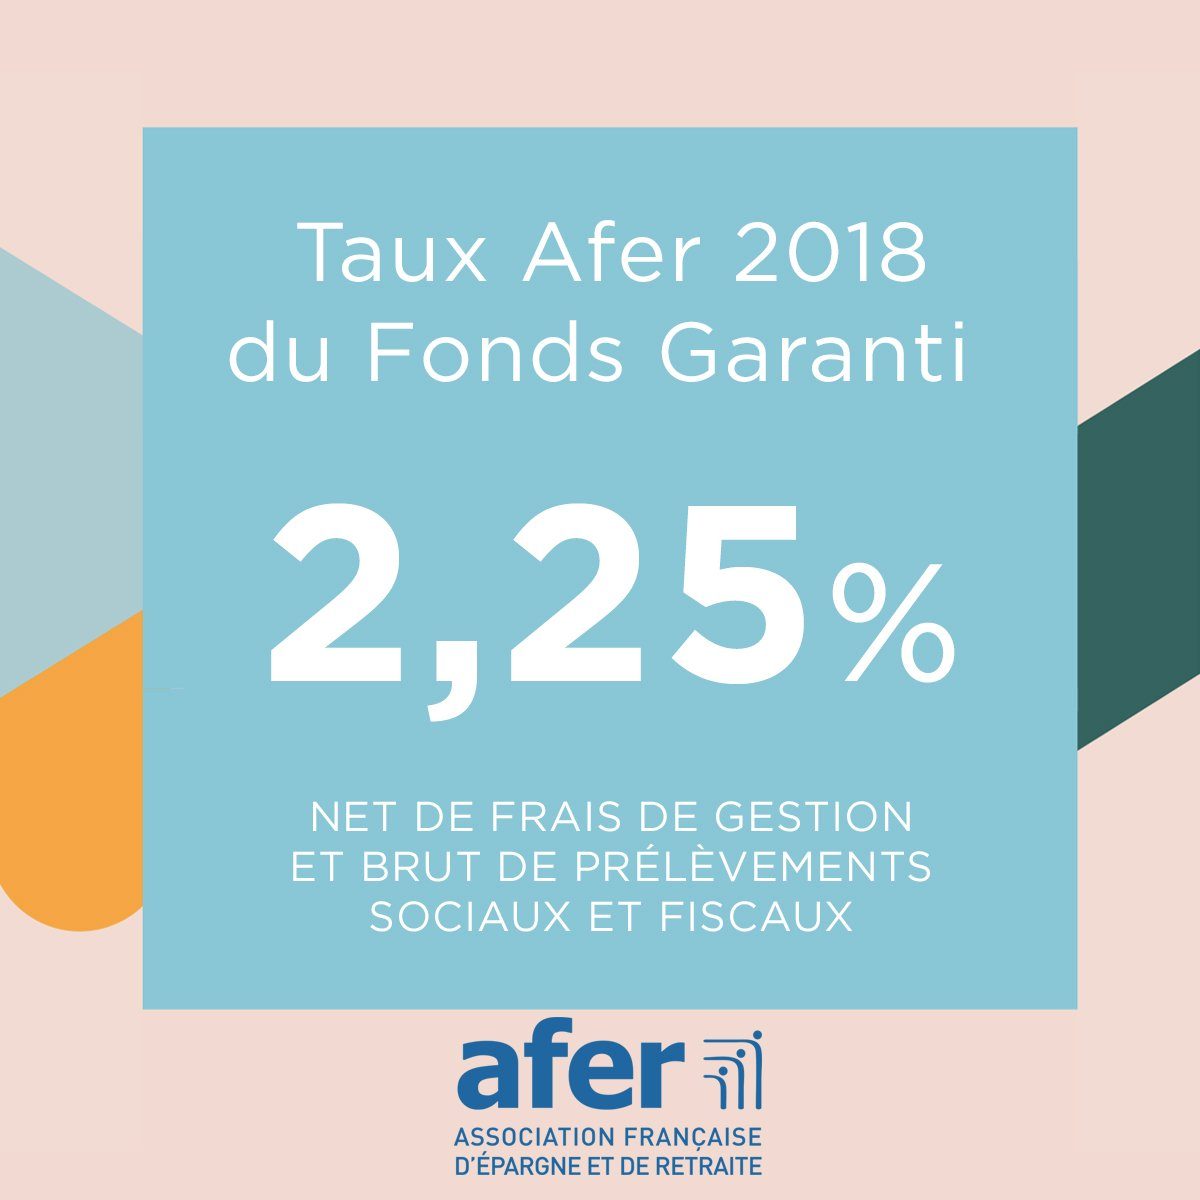 Assurance-Vie AFER, taux publié 2018 sur le fonds euros : 2.25%, en baisse de (-6.25%) par rapport à 2017